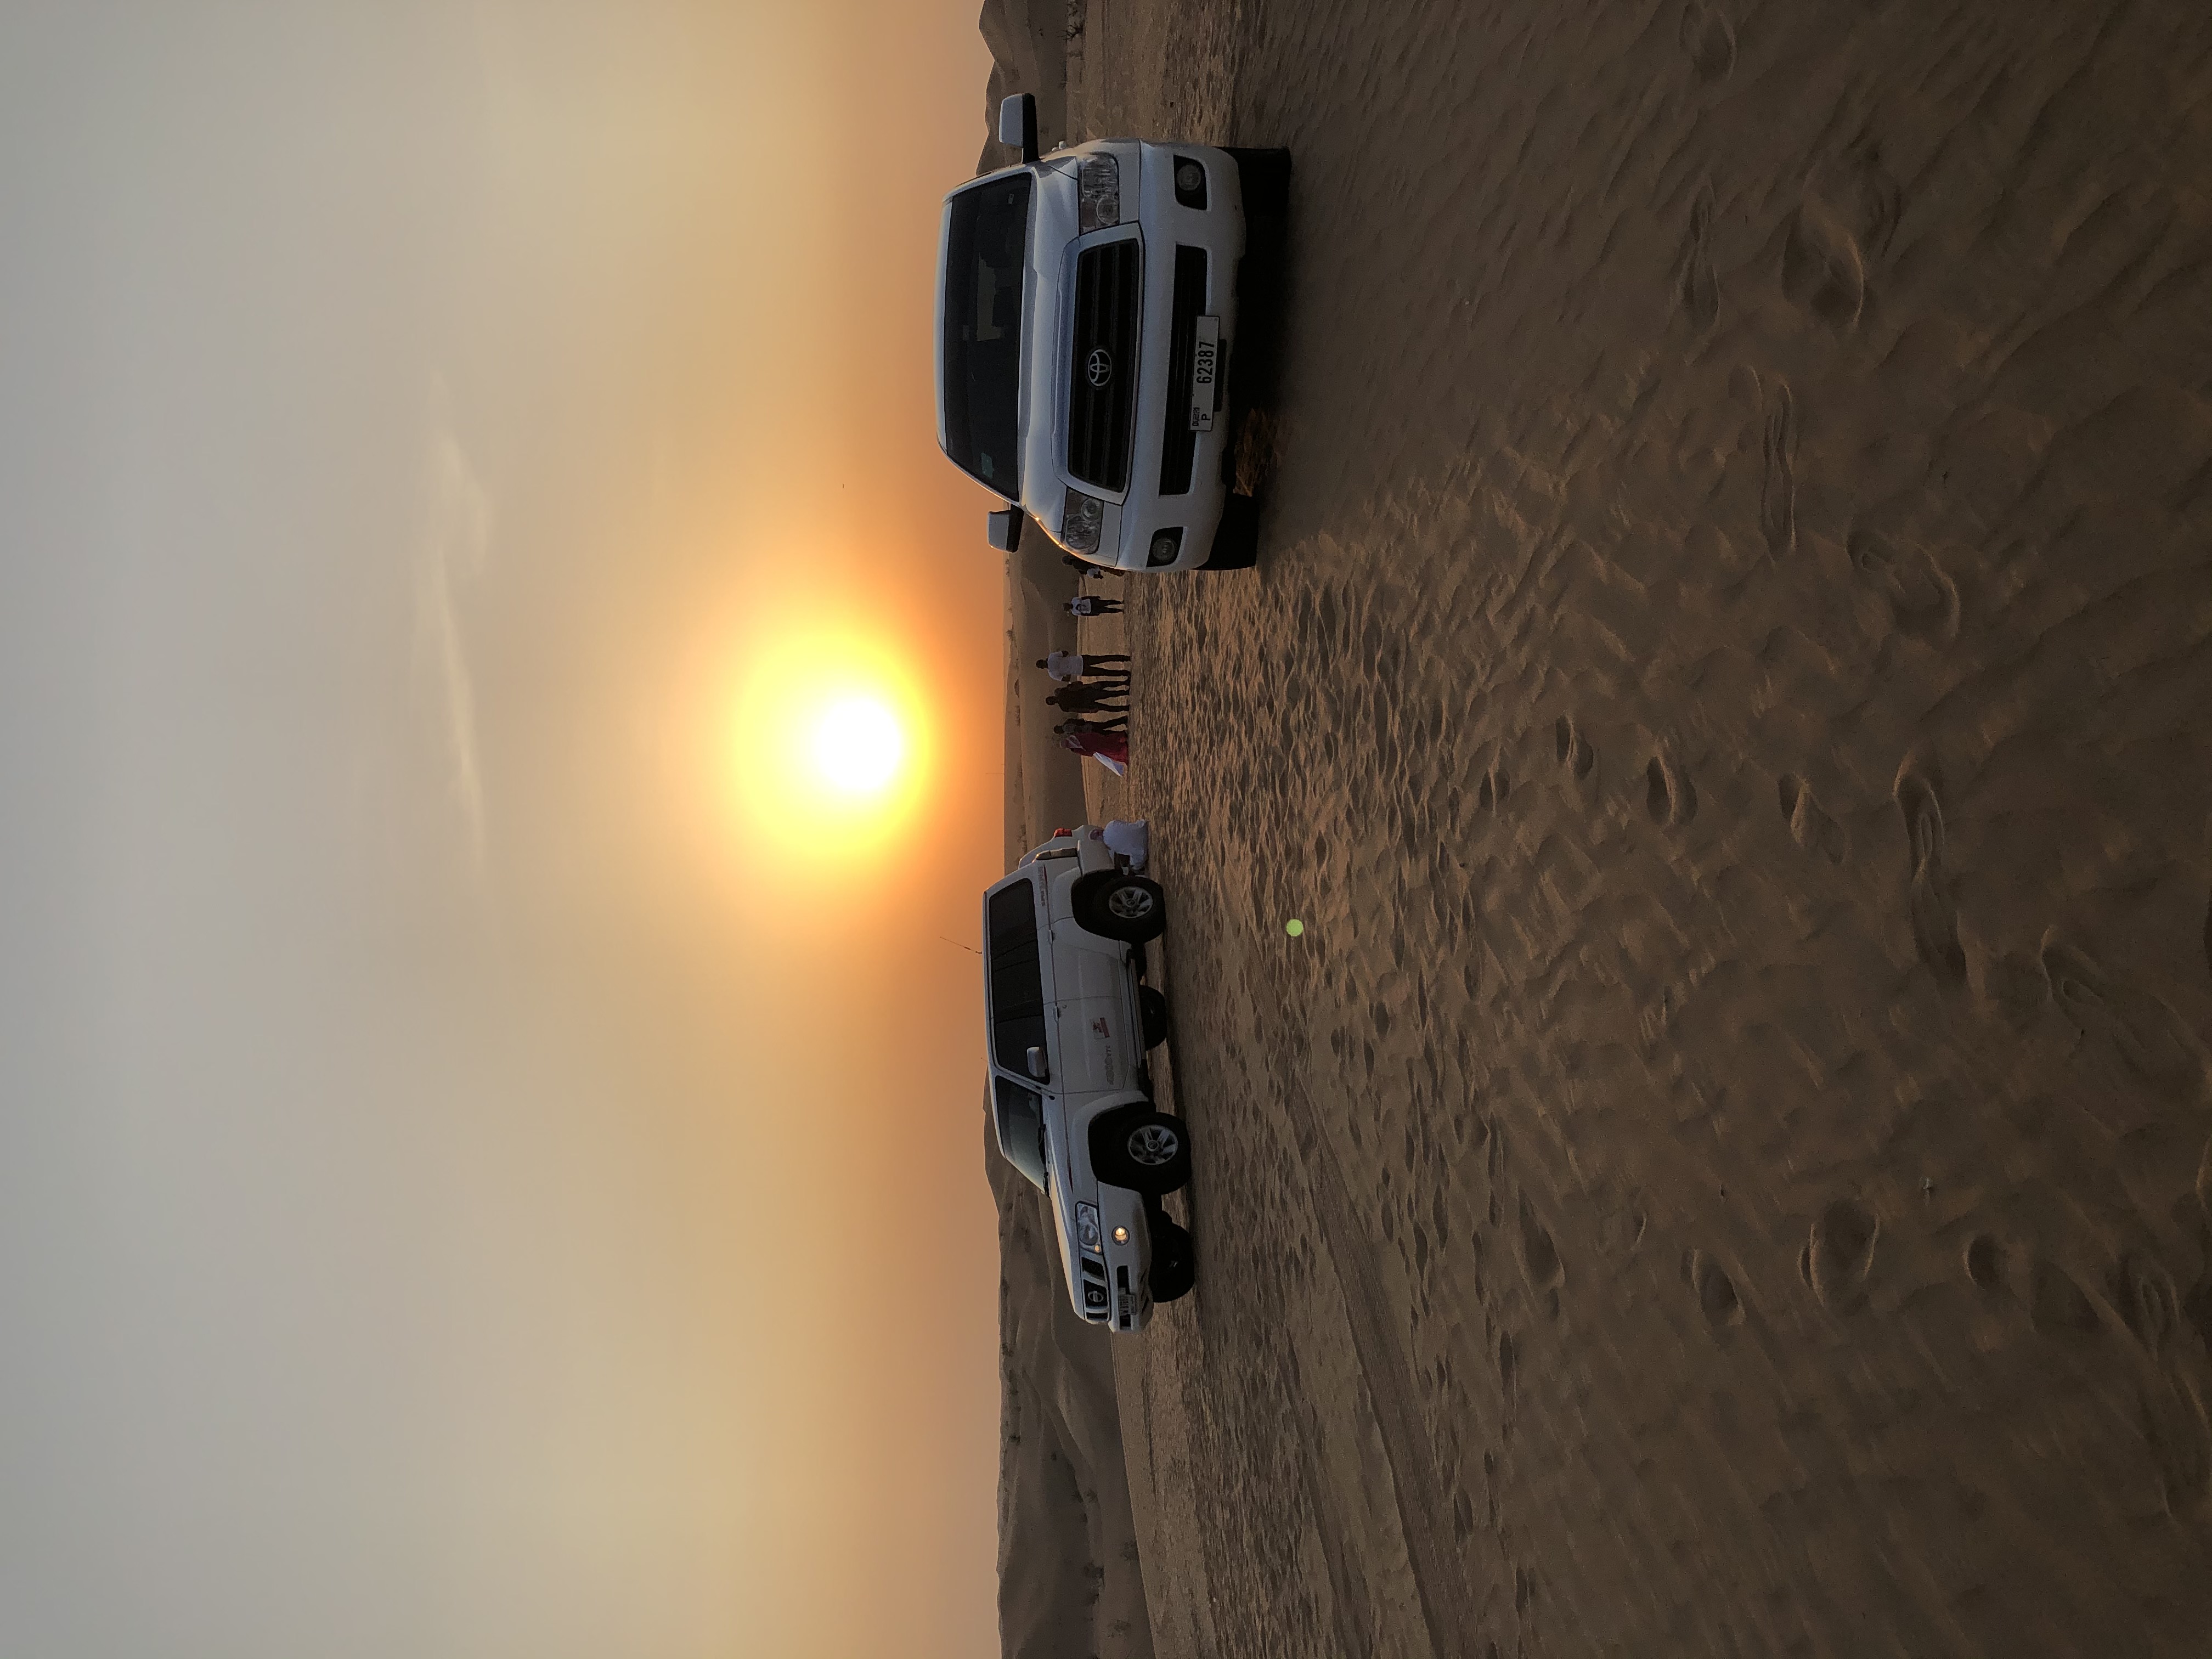 Dune bashing a terepjárókkal: megálltunk naplementét nézni